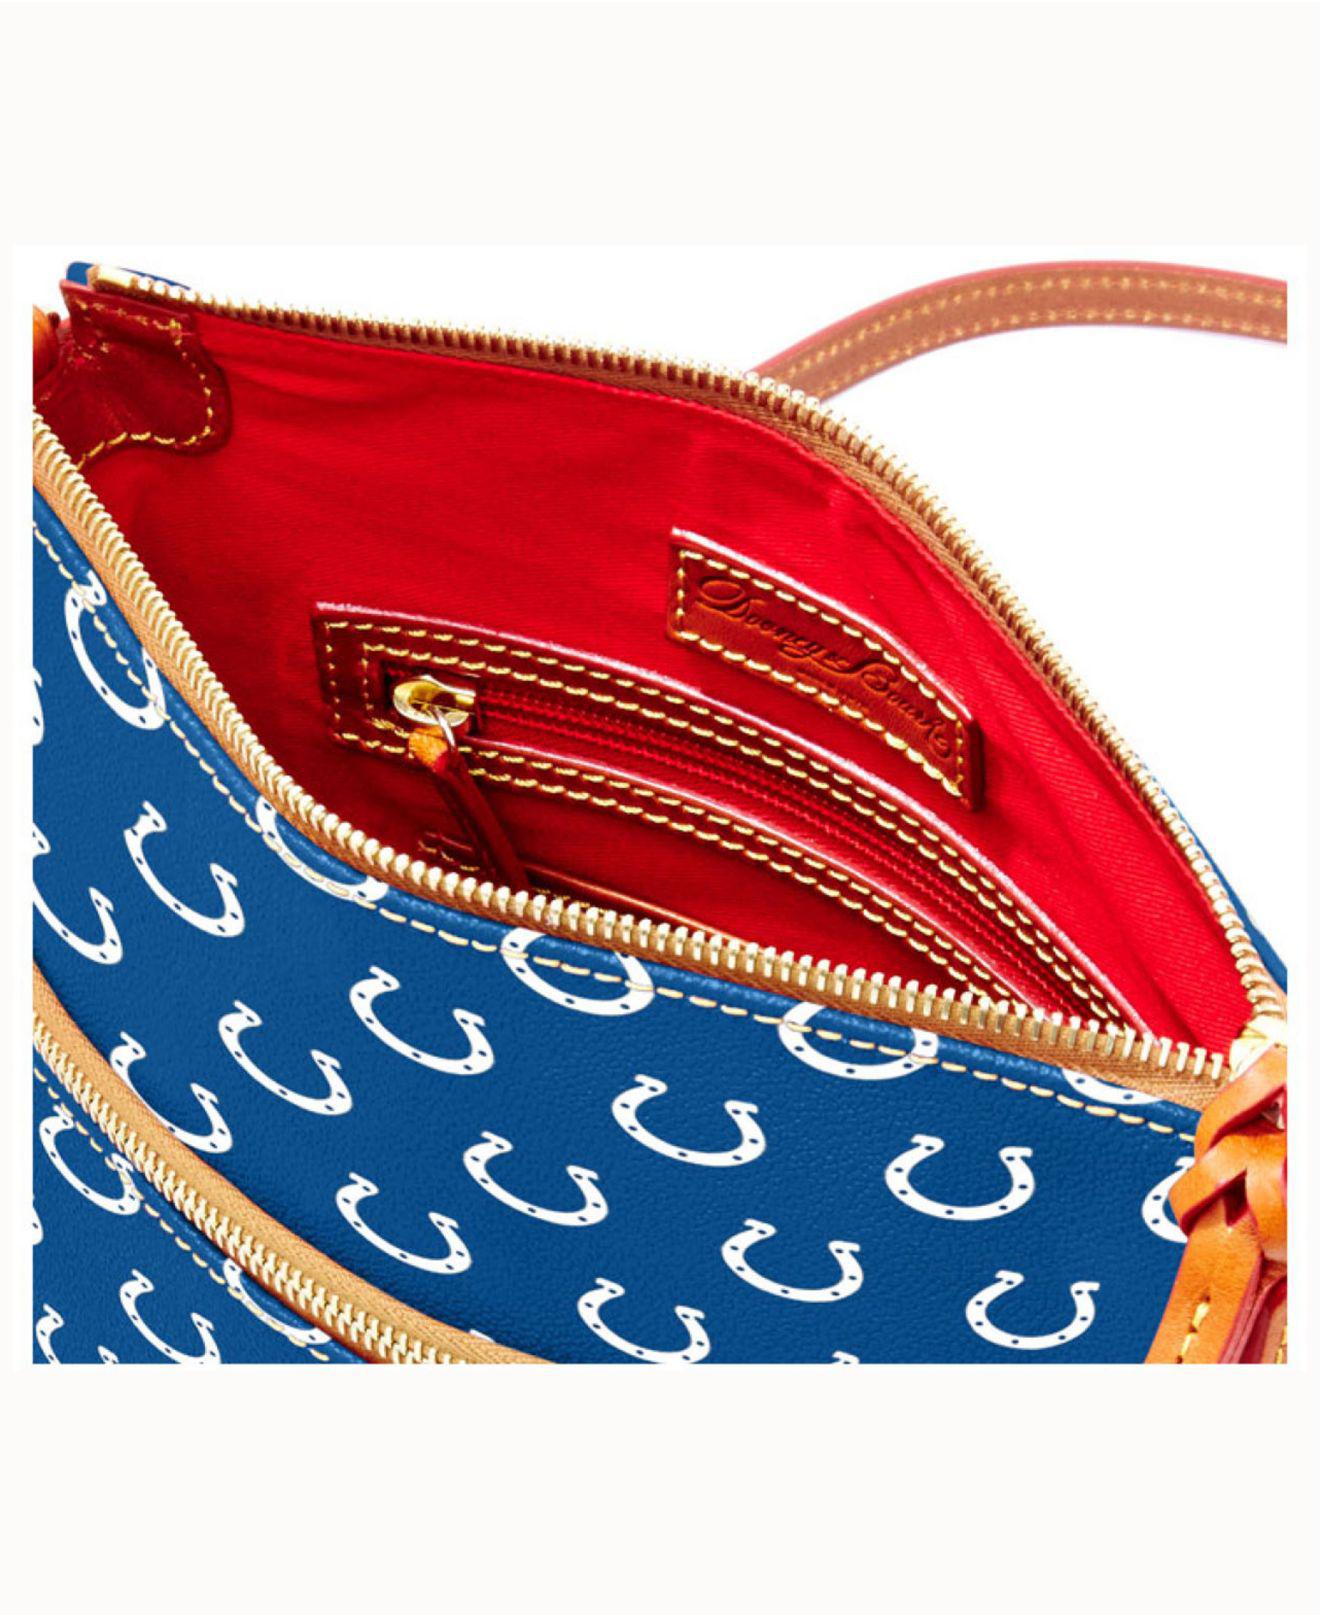 Dooney & Bourke St. Louis Cardinals Triple Zip Crossbody Bag - Macy's